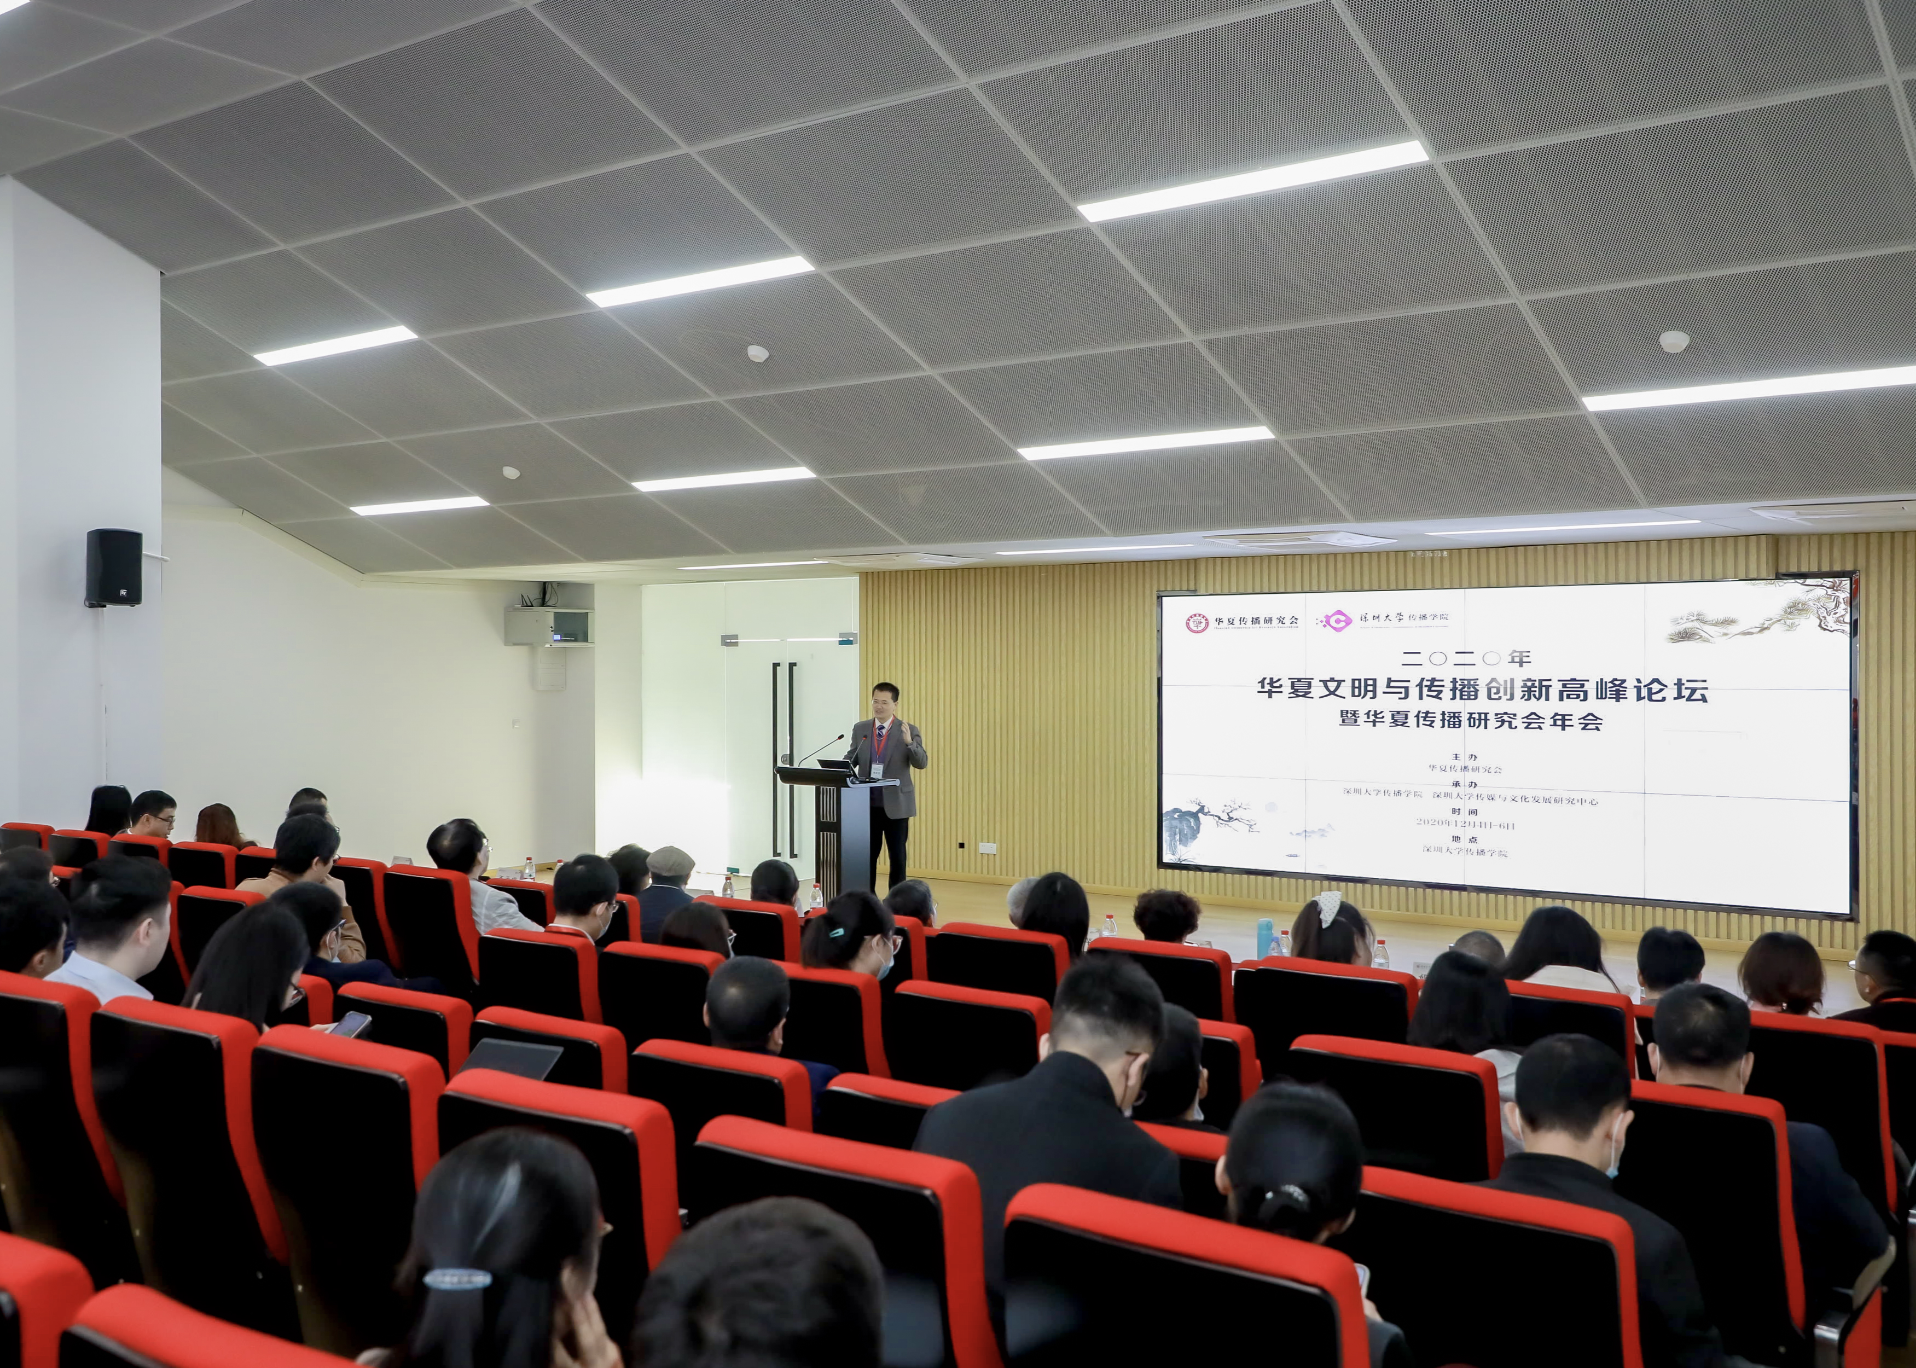 华夏文明与传播创新高峰论坛暨华夏传播研究会年会在深圳大学举行